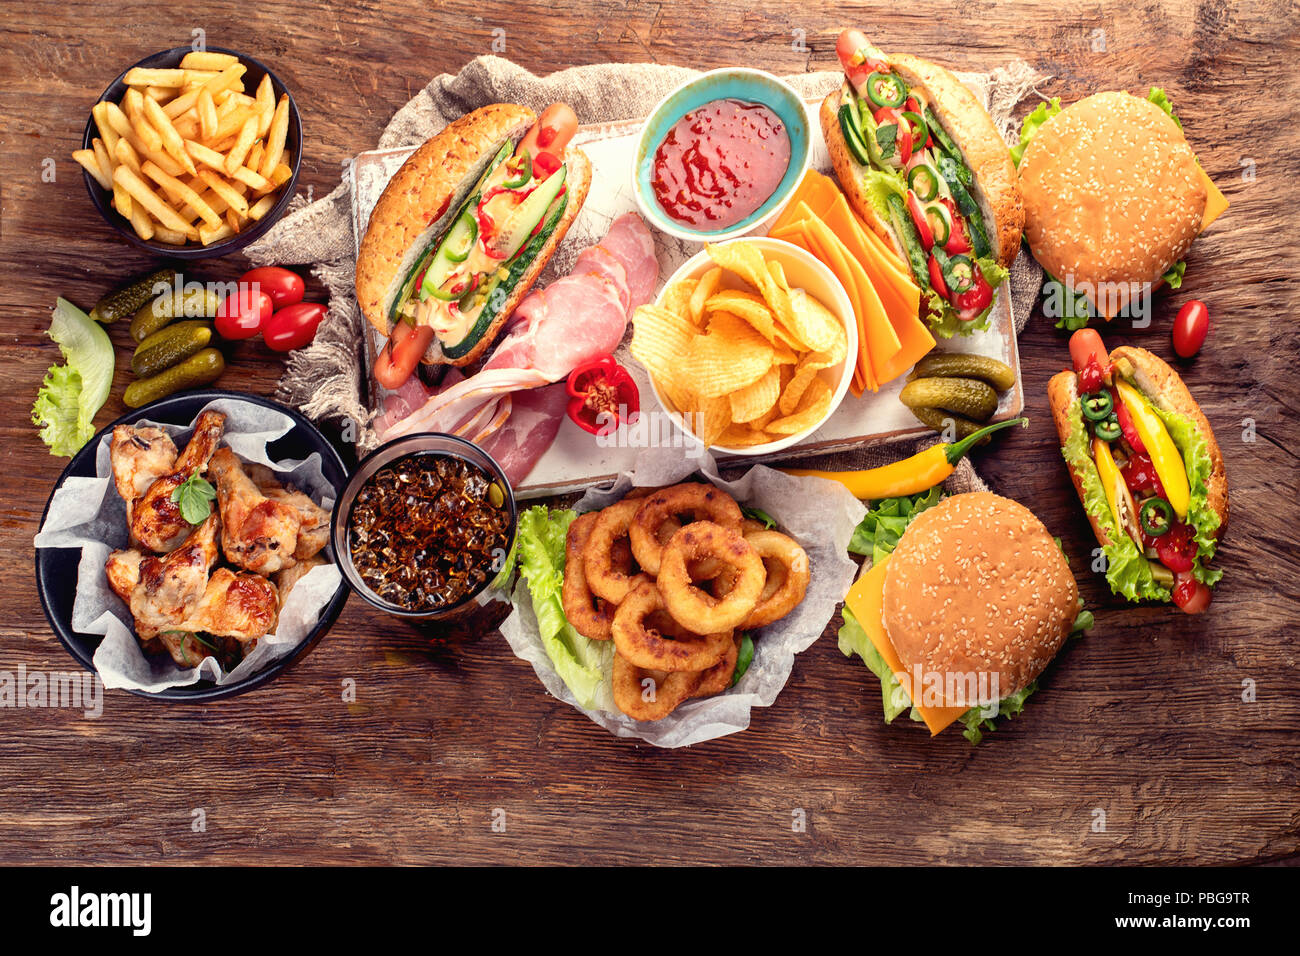 Amerikanisches Essen. Fast food. Ansicht von oben Stockfoto